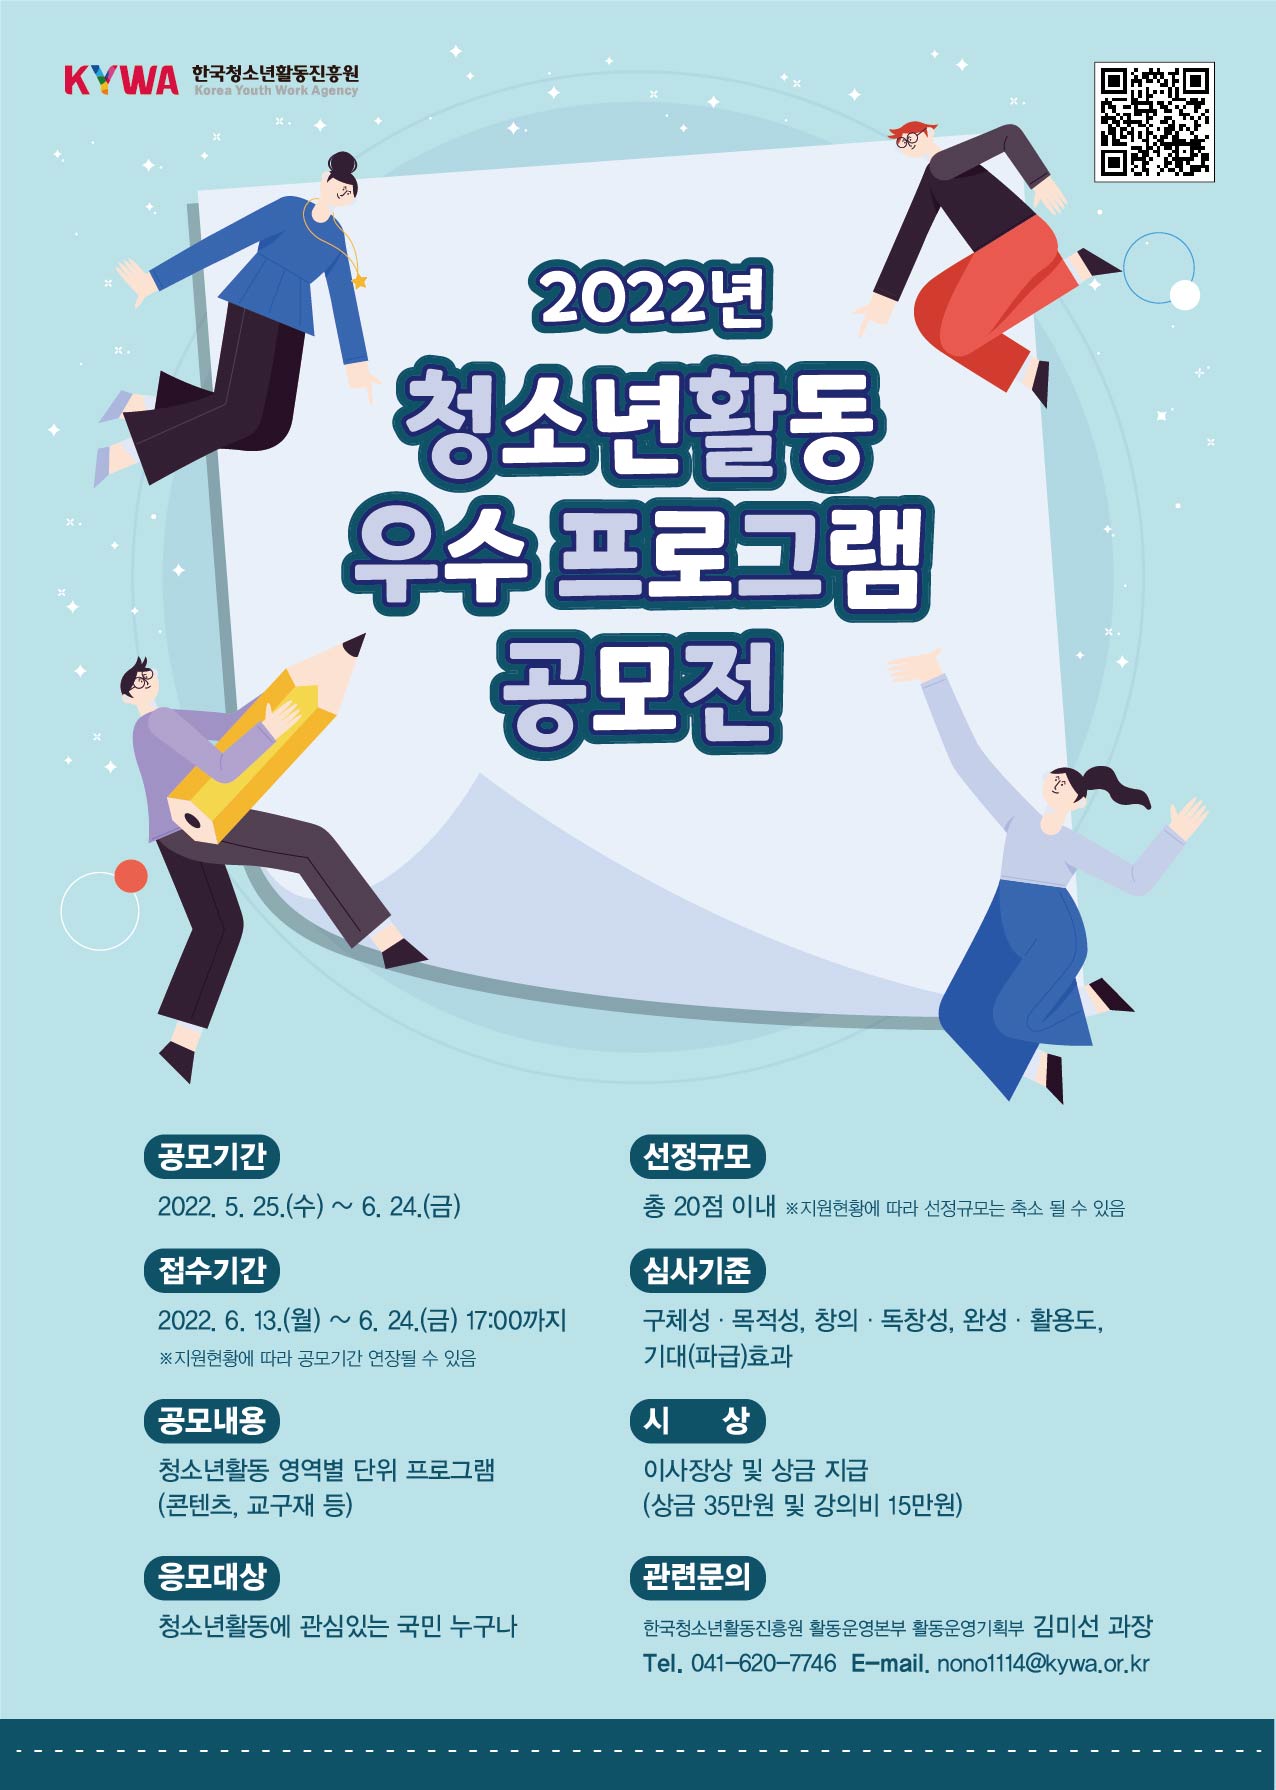 [한국청소년활동진흥원] '2022년 청소년활동 우수 프로그램 공모전' 공고